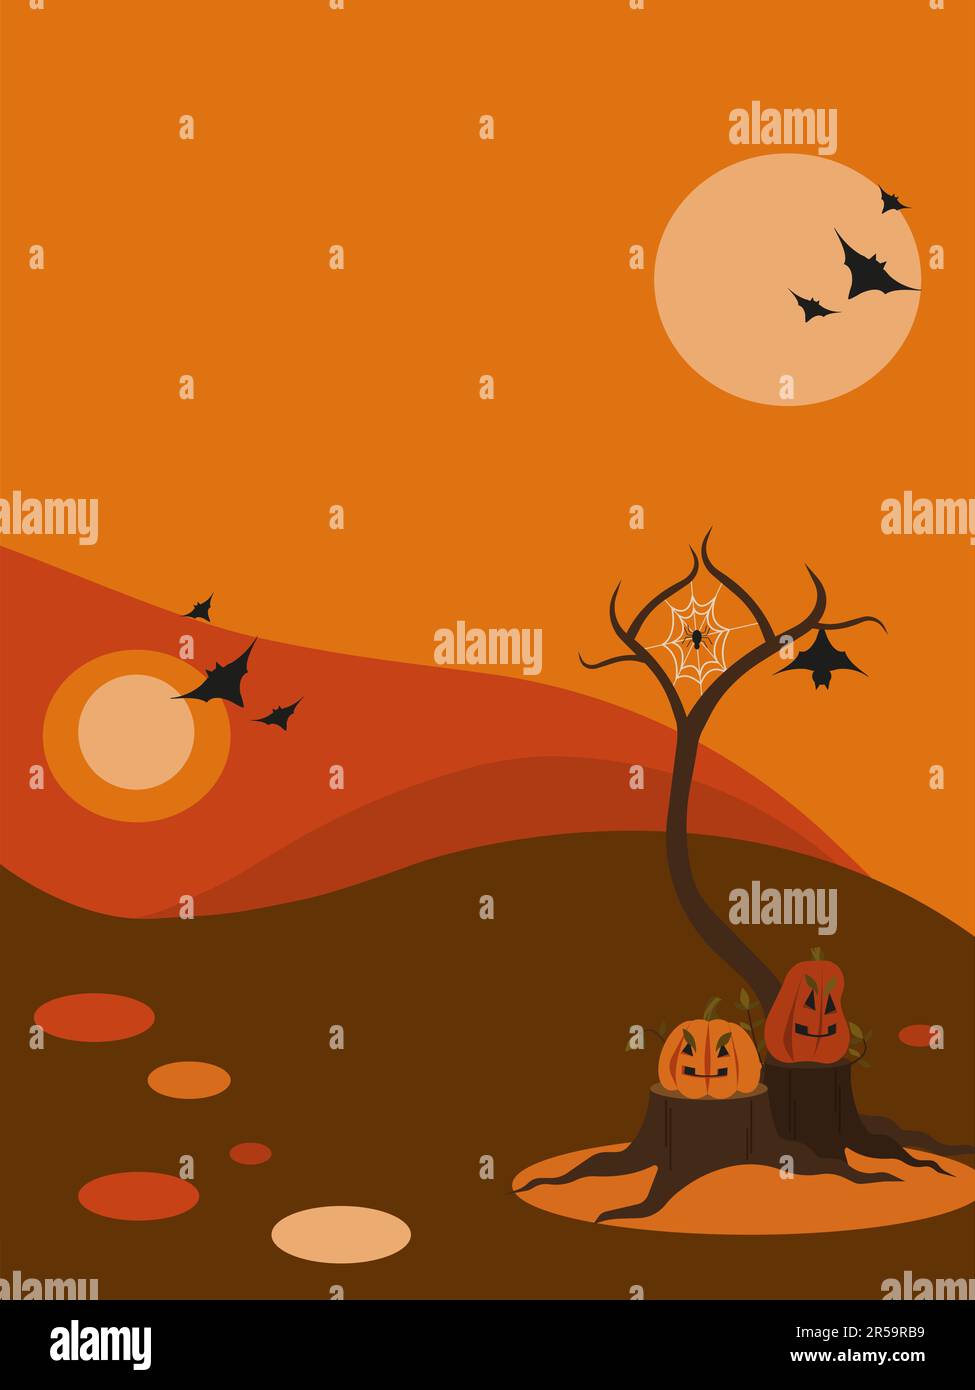 Escena de halloween vertical. Calabazas en tocones, árbol de otoño sin hojas, araña en una red, murciélagos. Paisaje de otoño, colores naranja, rojo y marrón. Plano Ilustración del Vector